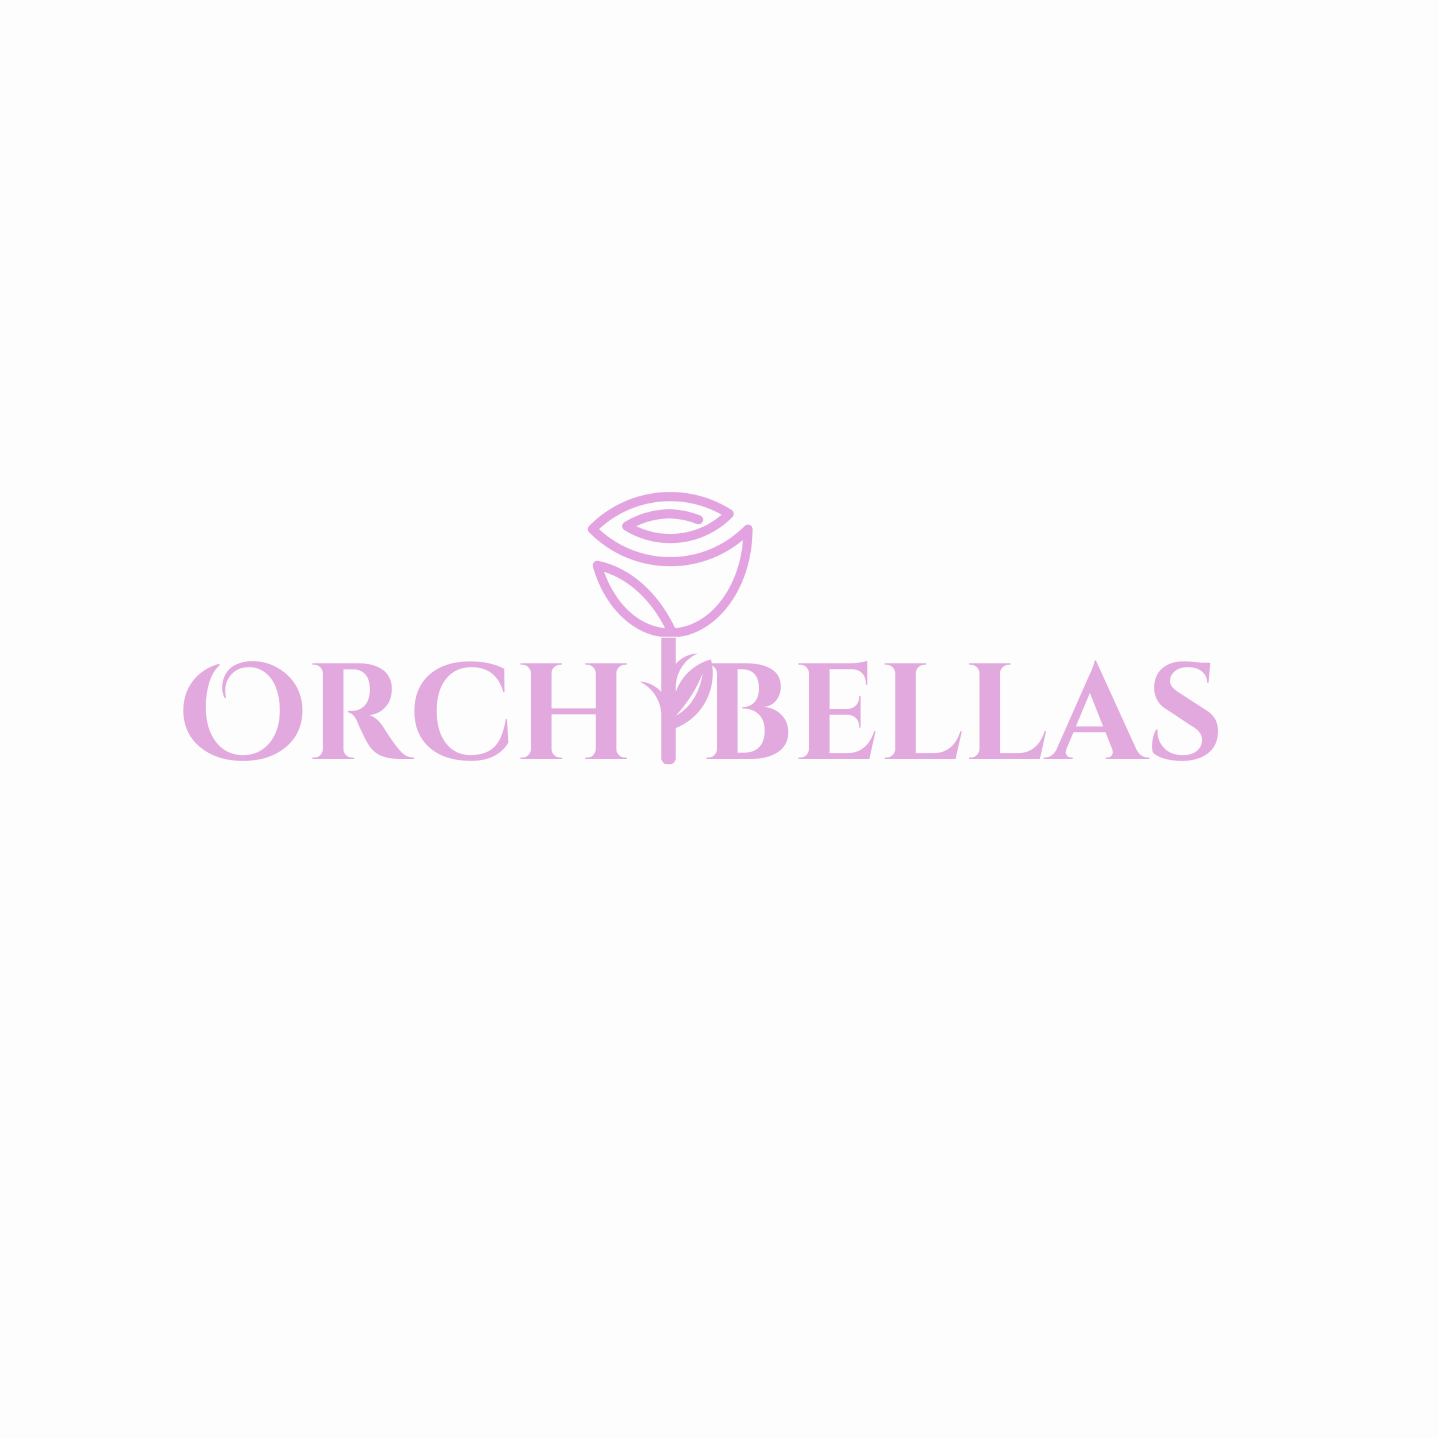 Orchibellas